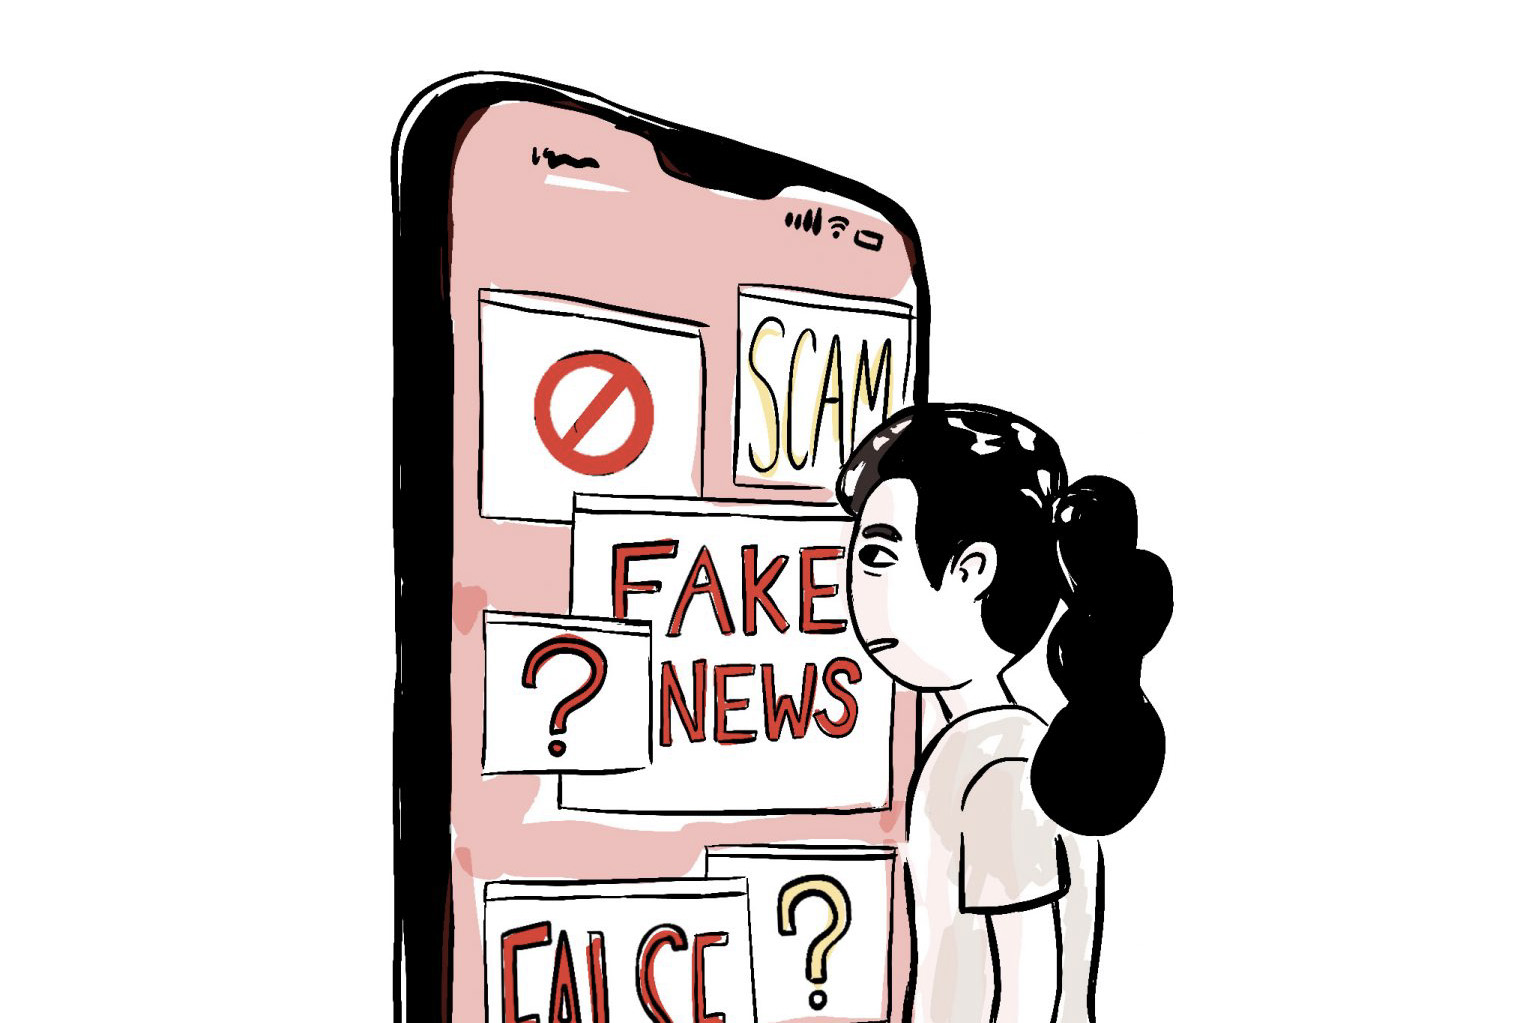 Illustration of encountering disinformation